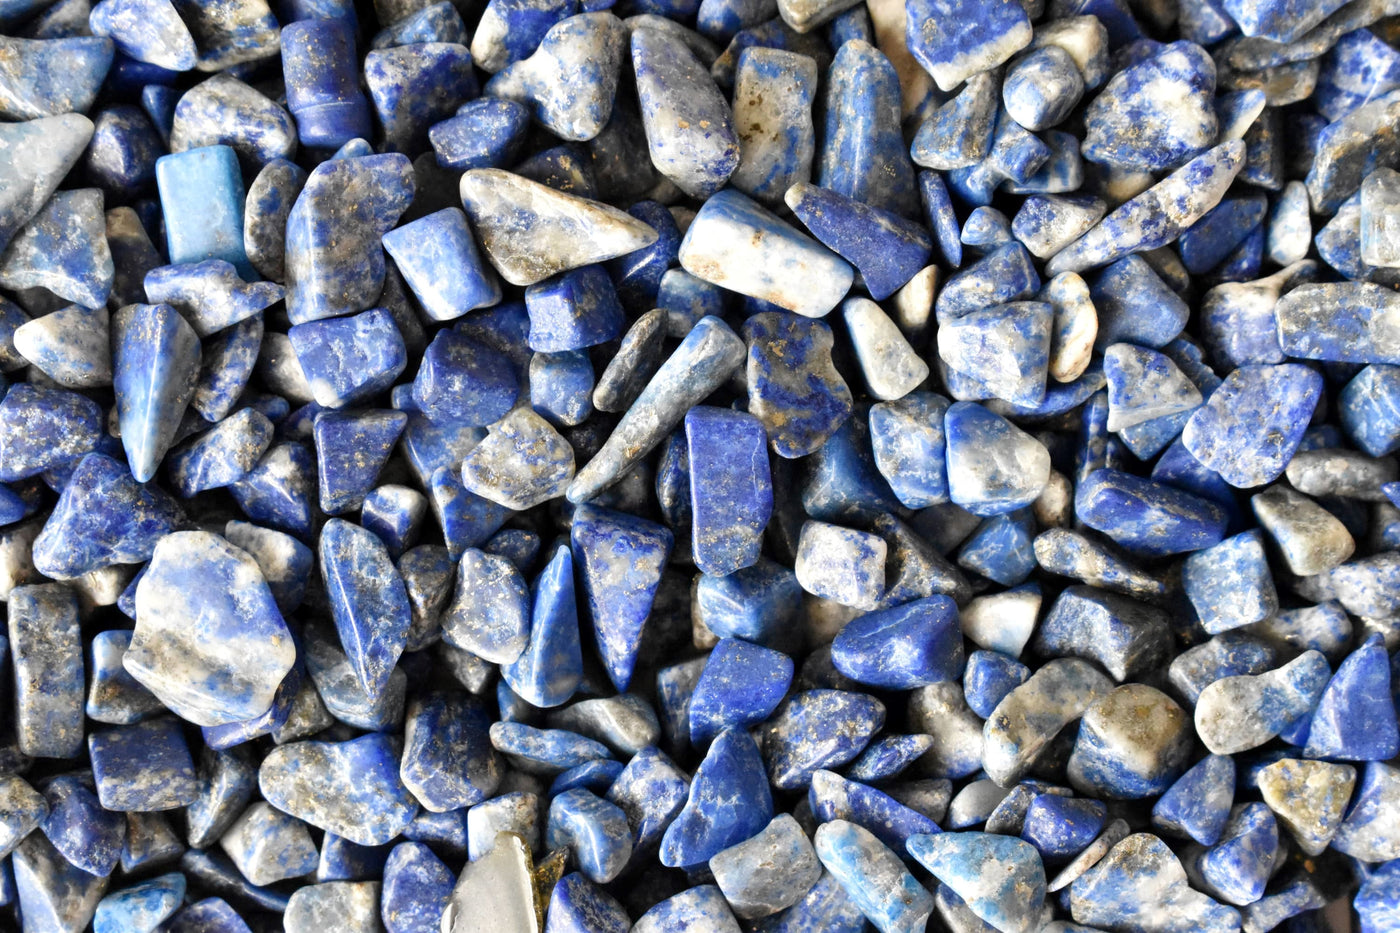 Raw Lapis Lazuli Crystal Chips, Chips de pierres précieuses non percées dans un paquet de 4 oz, 1/2 lb, 1 lb